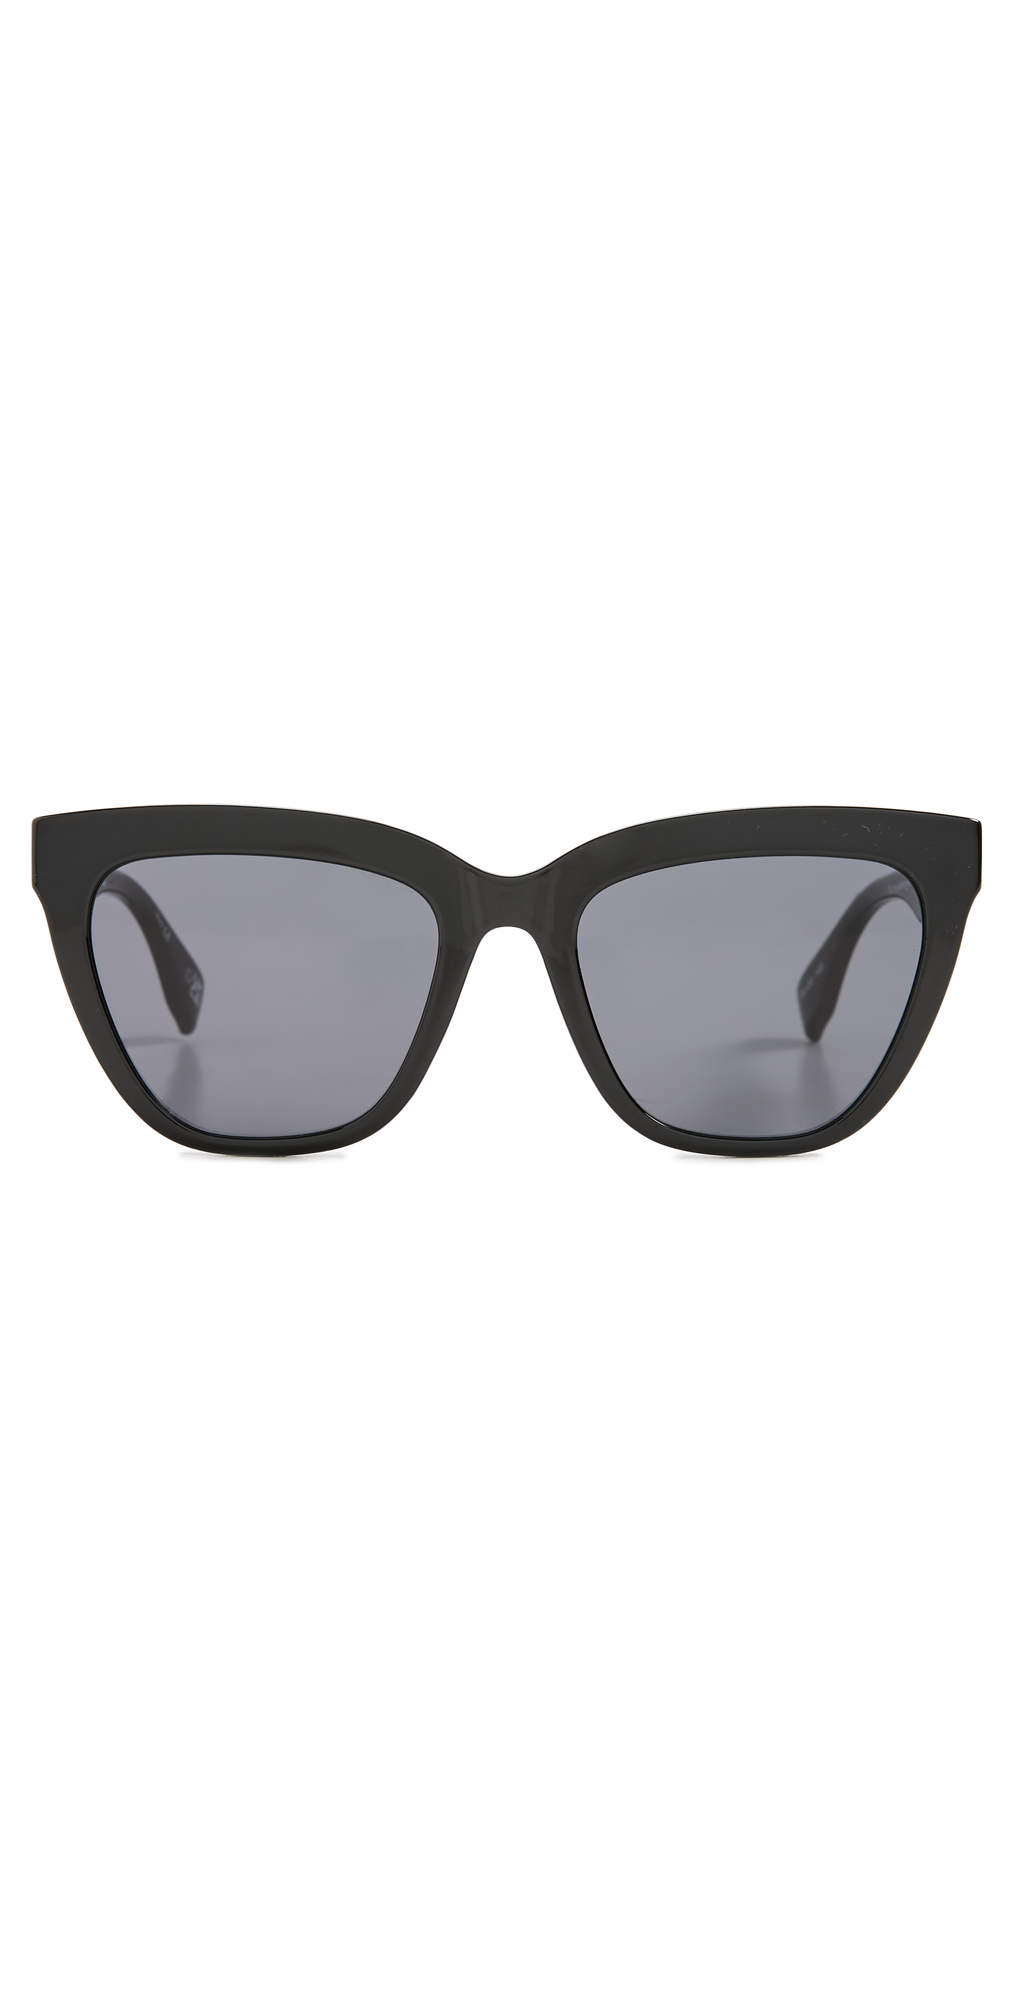 Le Specs Enthusiplastic Sunglasses in black